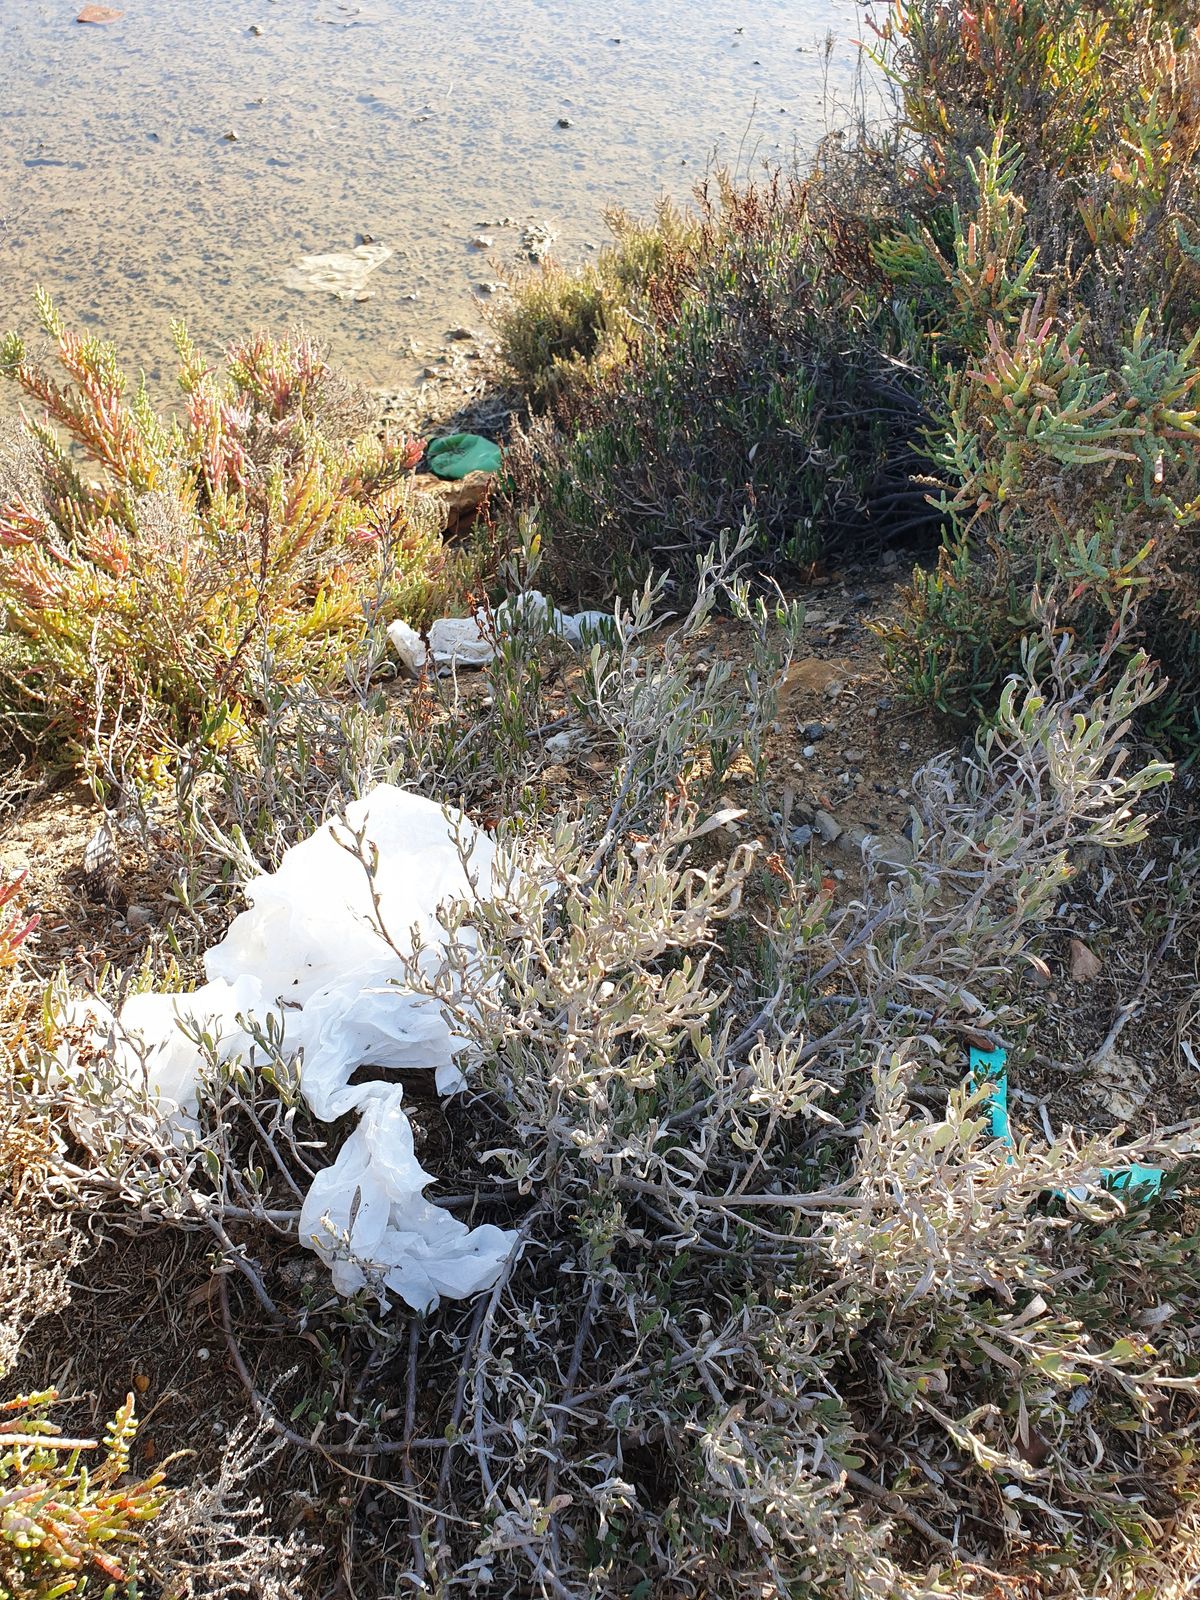 Ria Formosa déchets en plastique pollution